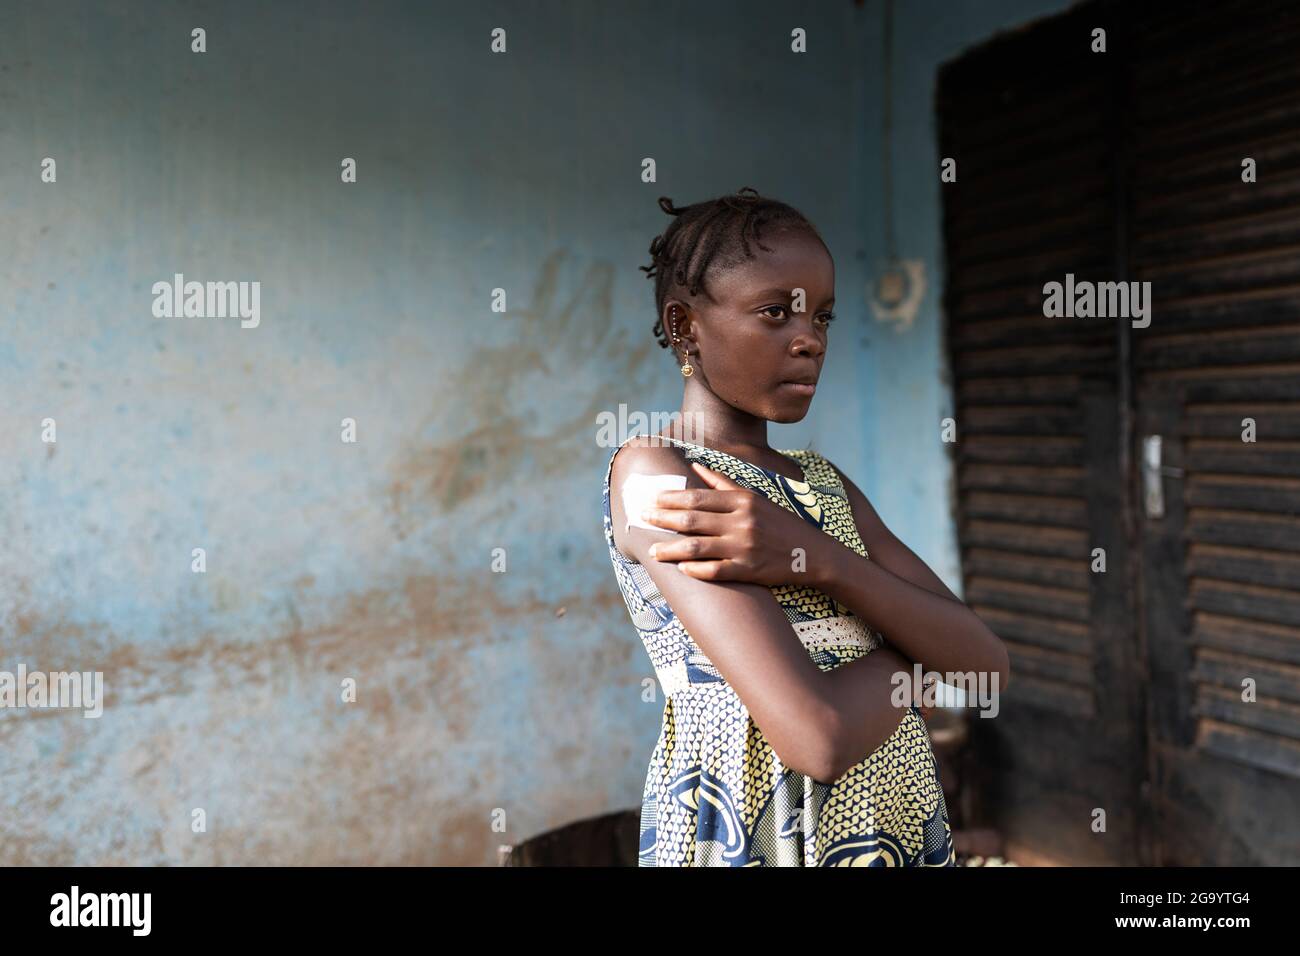 In questa immagine una piccola shoolgirl africana in un bel vestito estivo con un'espressione dolorosa sul suo viso è in piedi prima dell'ingresso di un decrepito rurale Foto Stock